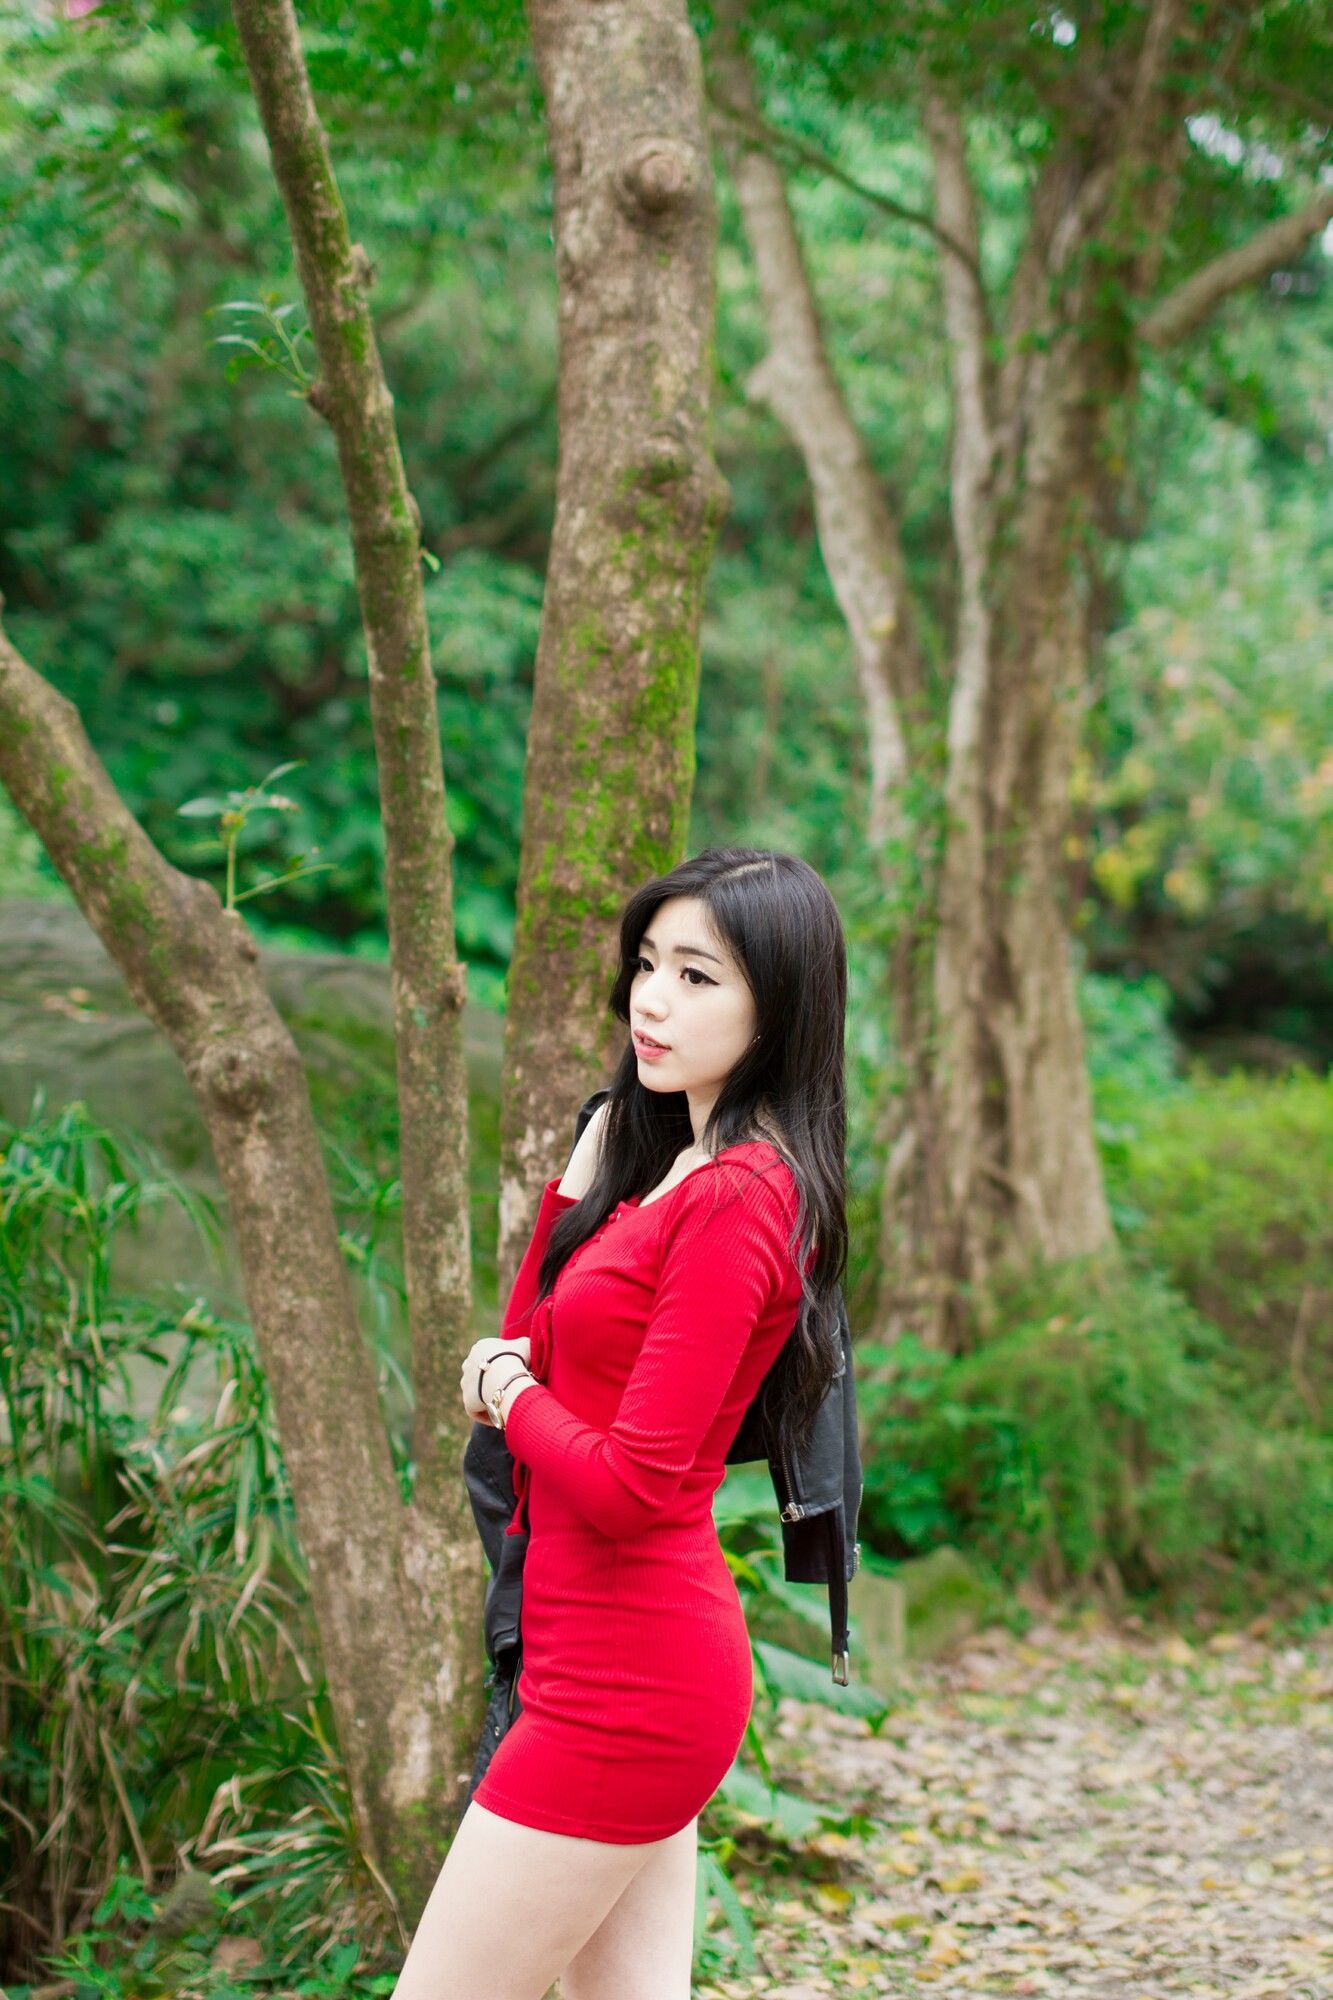 [台湾美女] 谢立琪 - 大安森林公園 写真图片[37](第7页)